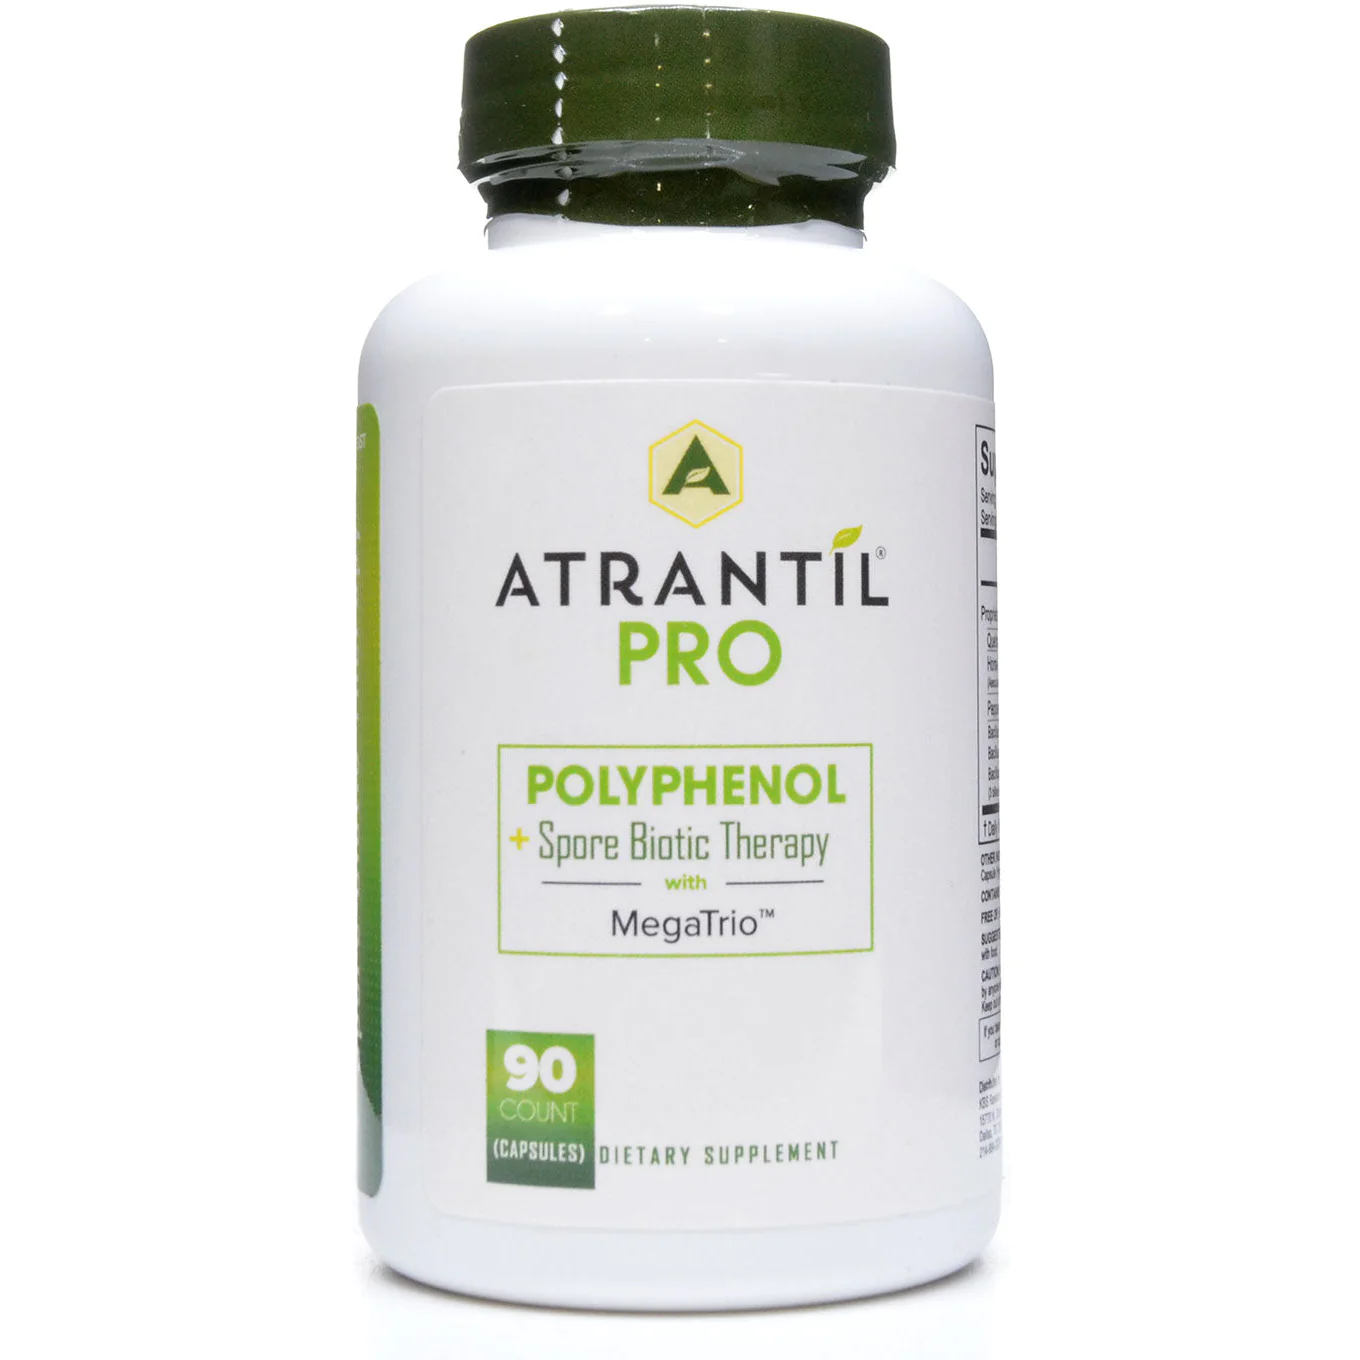 Atrantil Pro - SIBO + Probiotics Formula - 90 capsules